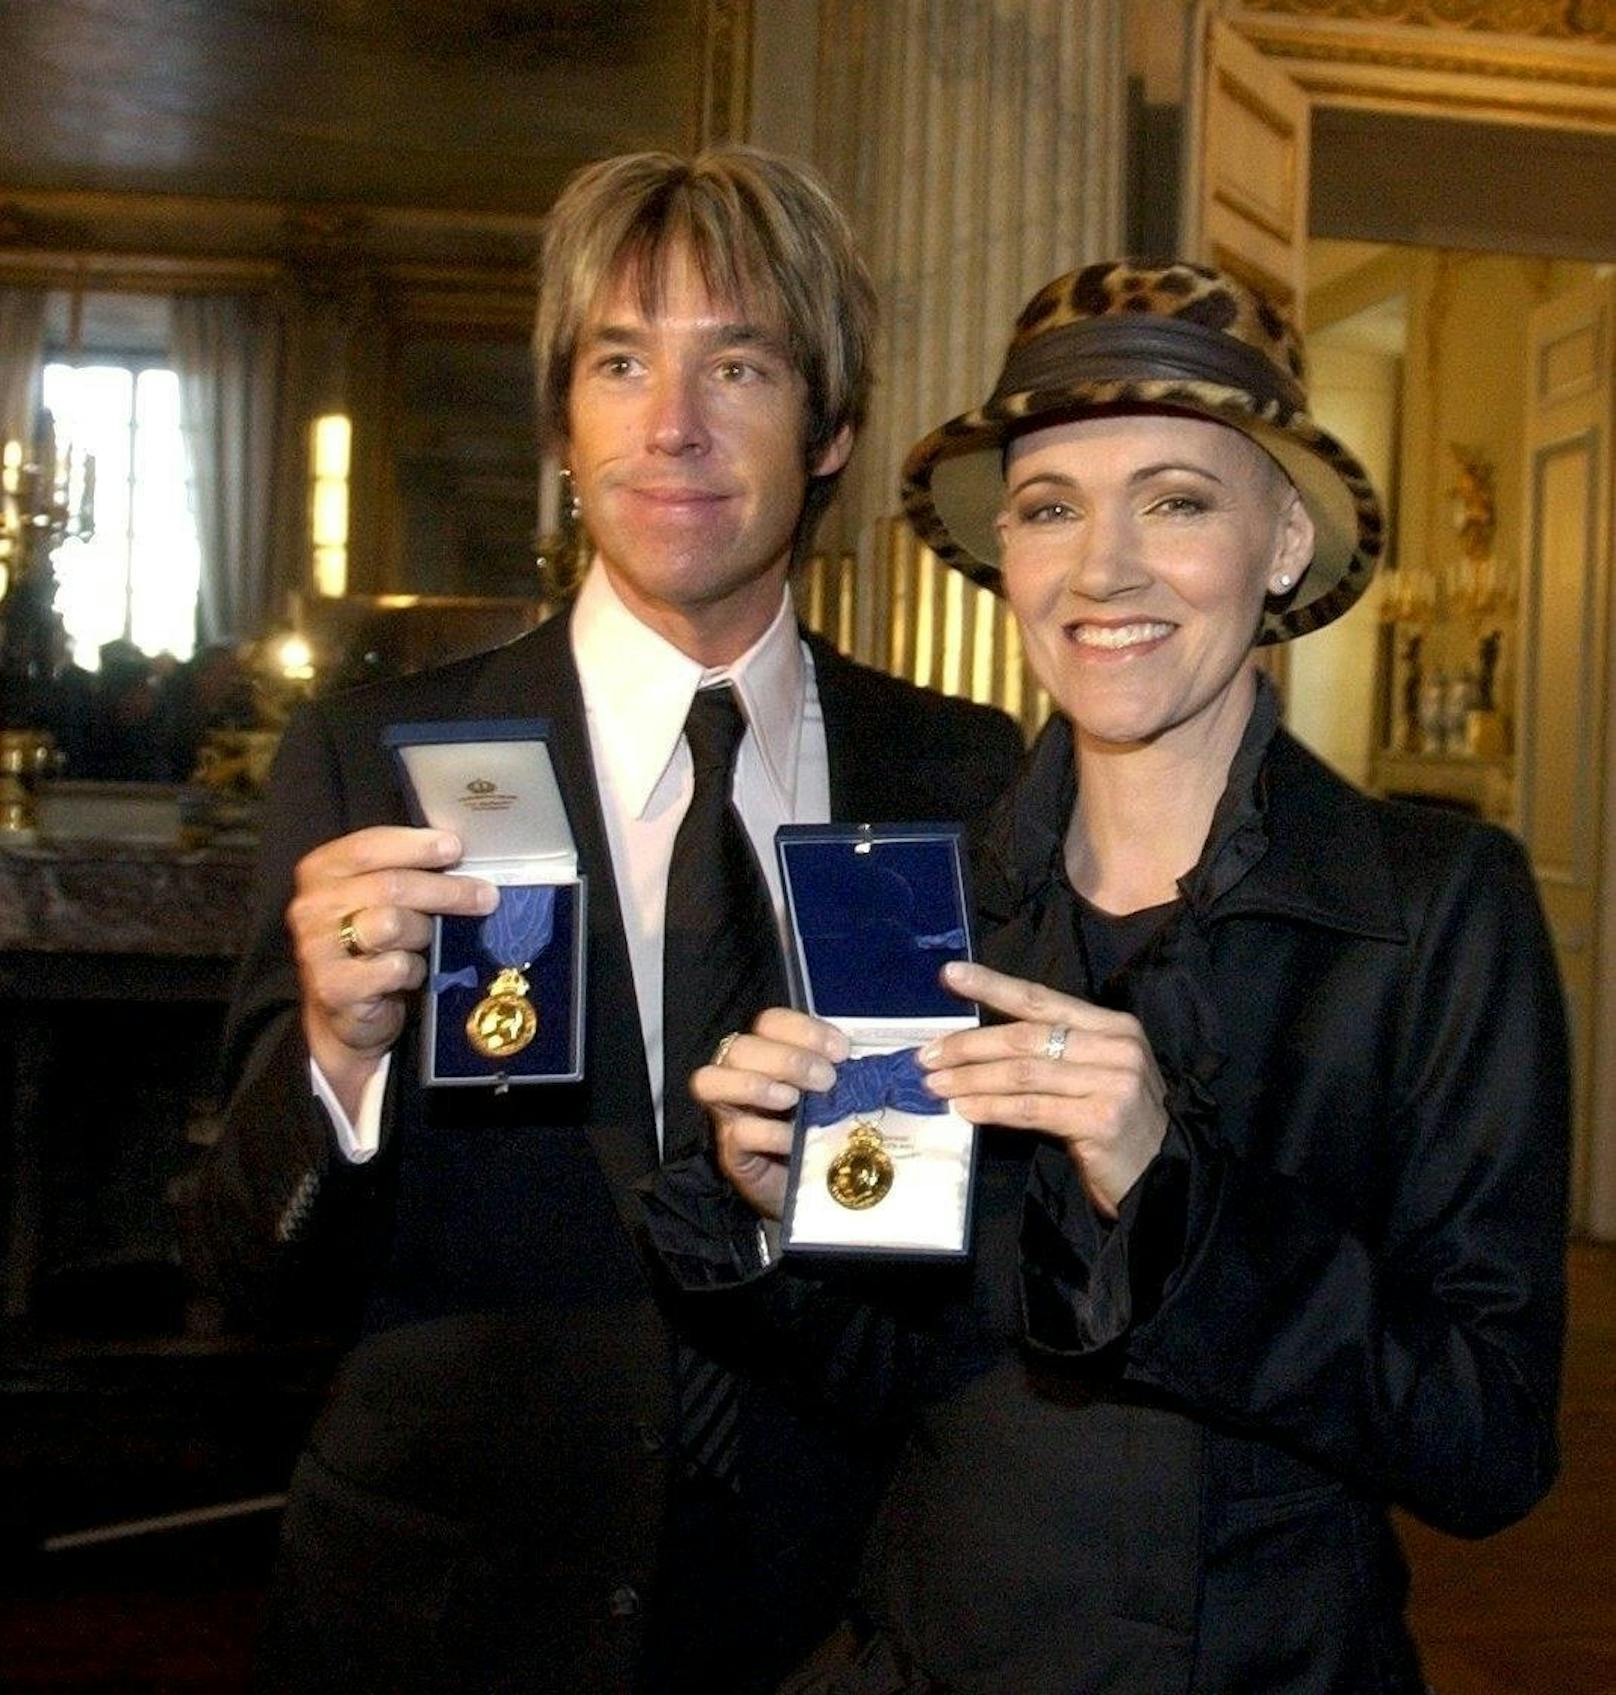 Marie Fredriksson und Per Gessle: Am 31. Jänner 2003 zeichnete der schwedische König Carl XVI. Gustaf die Roxette-Musiker mit einem Orden aus